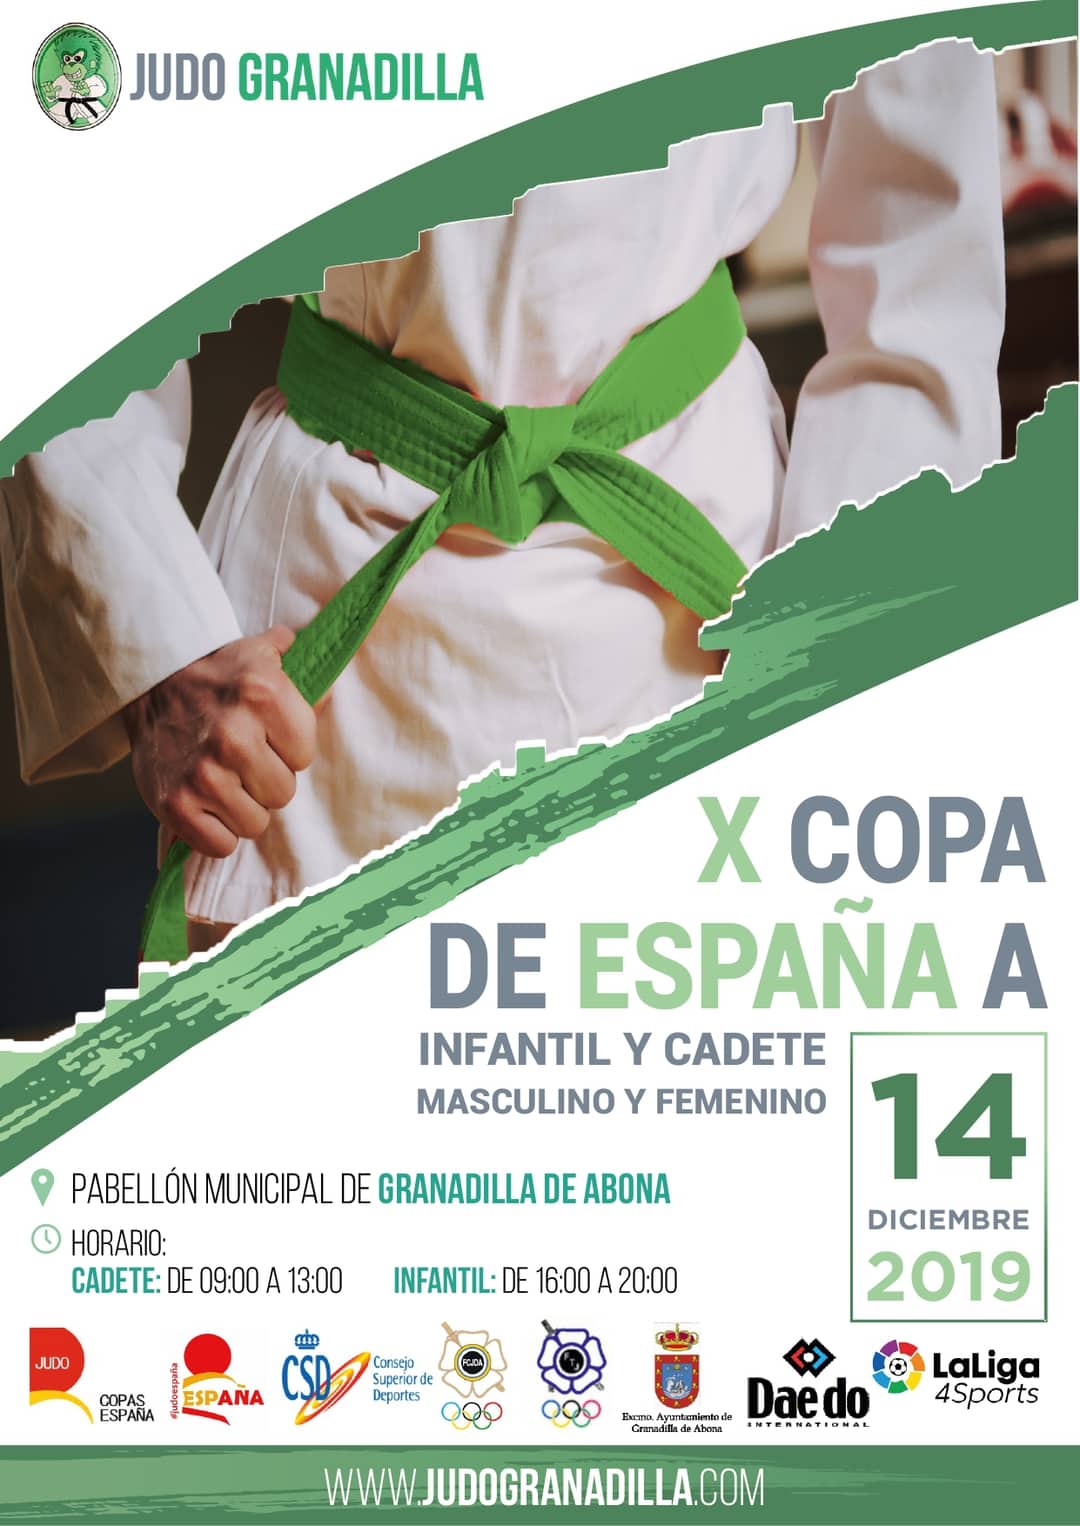 La ‘X Copa de España A de Judo Infantil y Cadete’ este sábado en el Pabellón Municipal